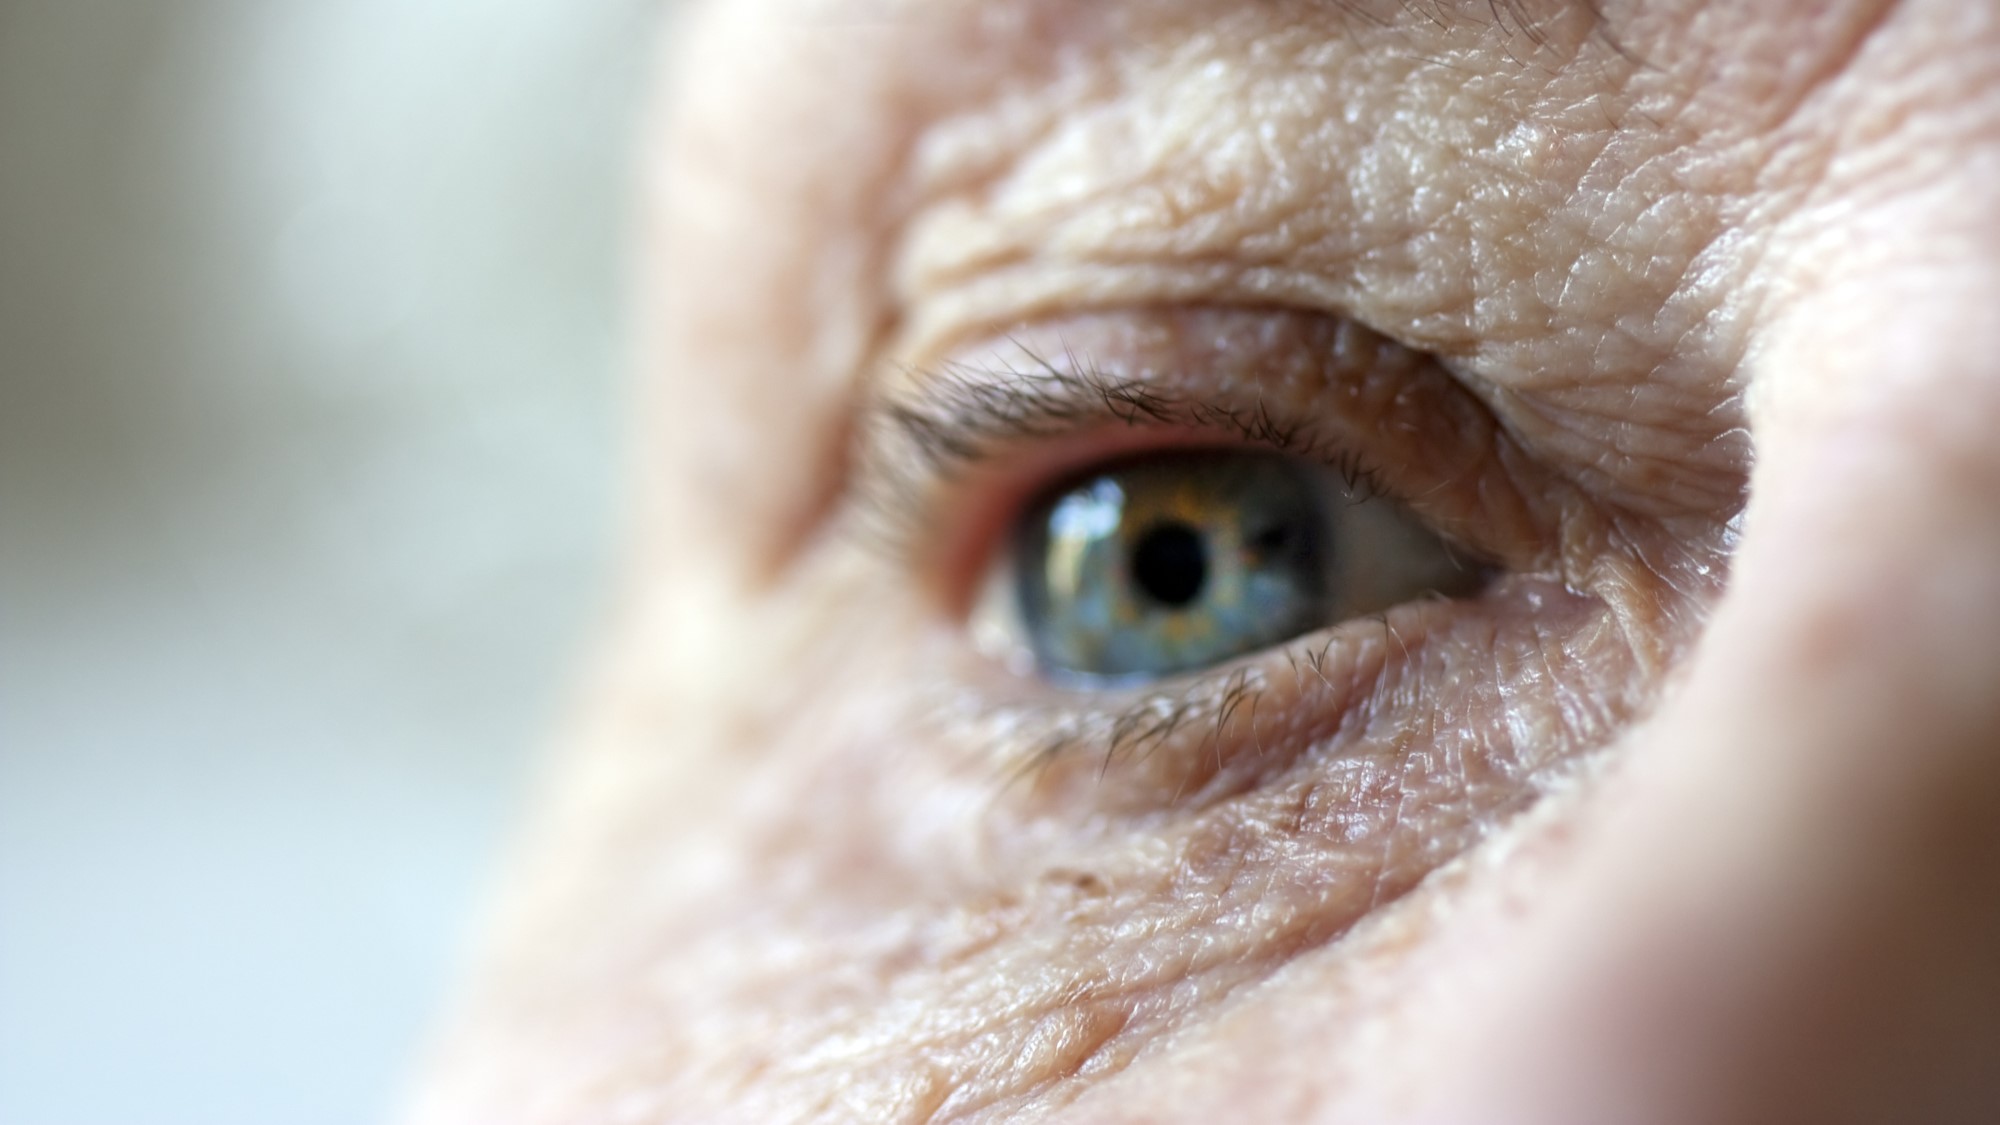 ИИ помогает предупредить старение. Как эта технология влияет на индустрию красоты - Фото